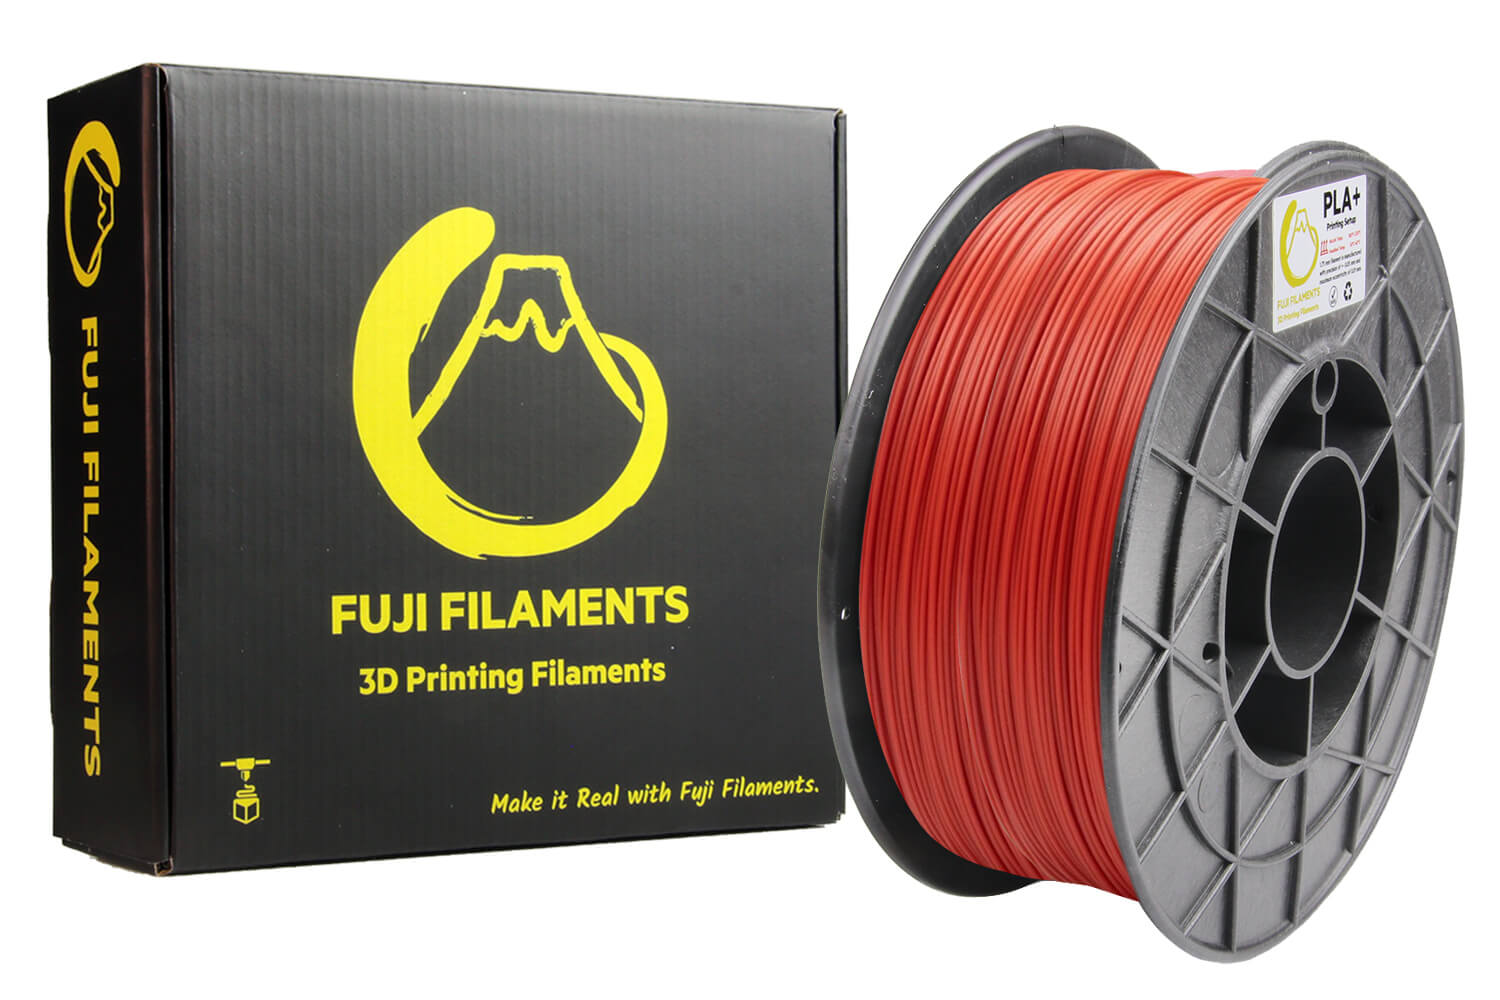 fuji-kirmizi-pla+-filament-1kg-1-1.jpg (133 KB)